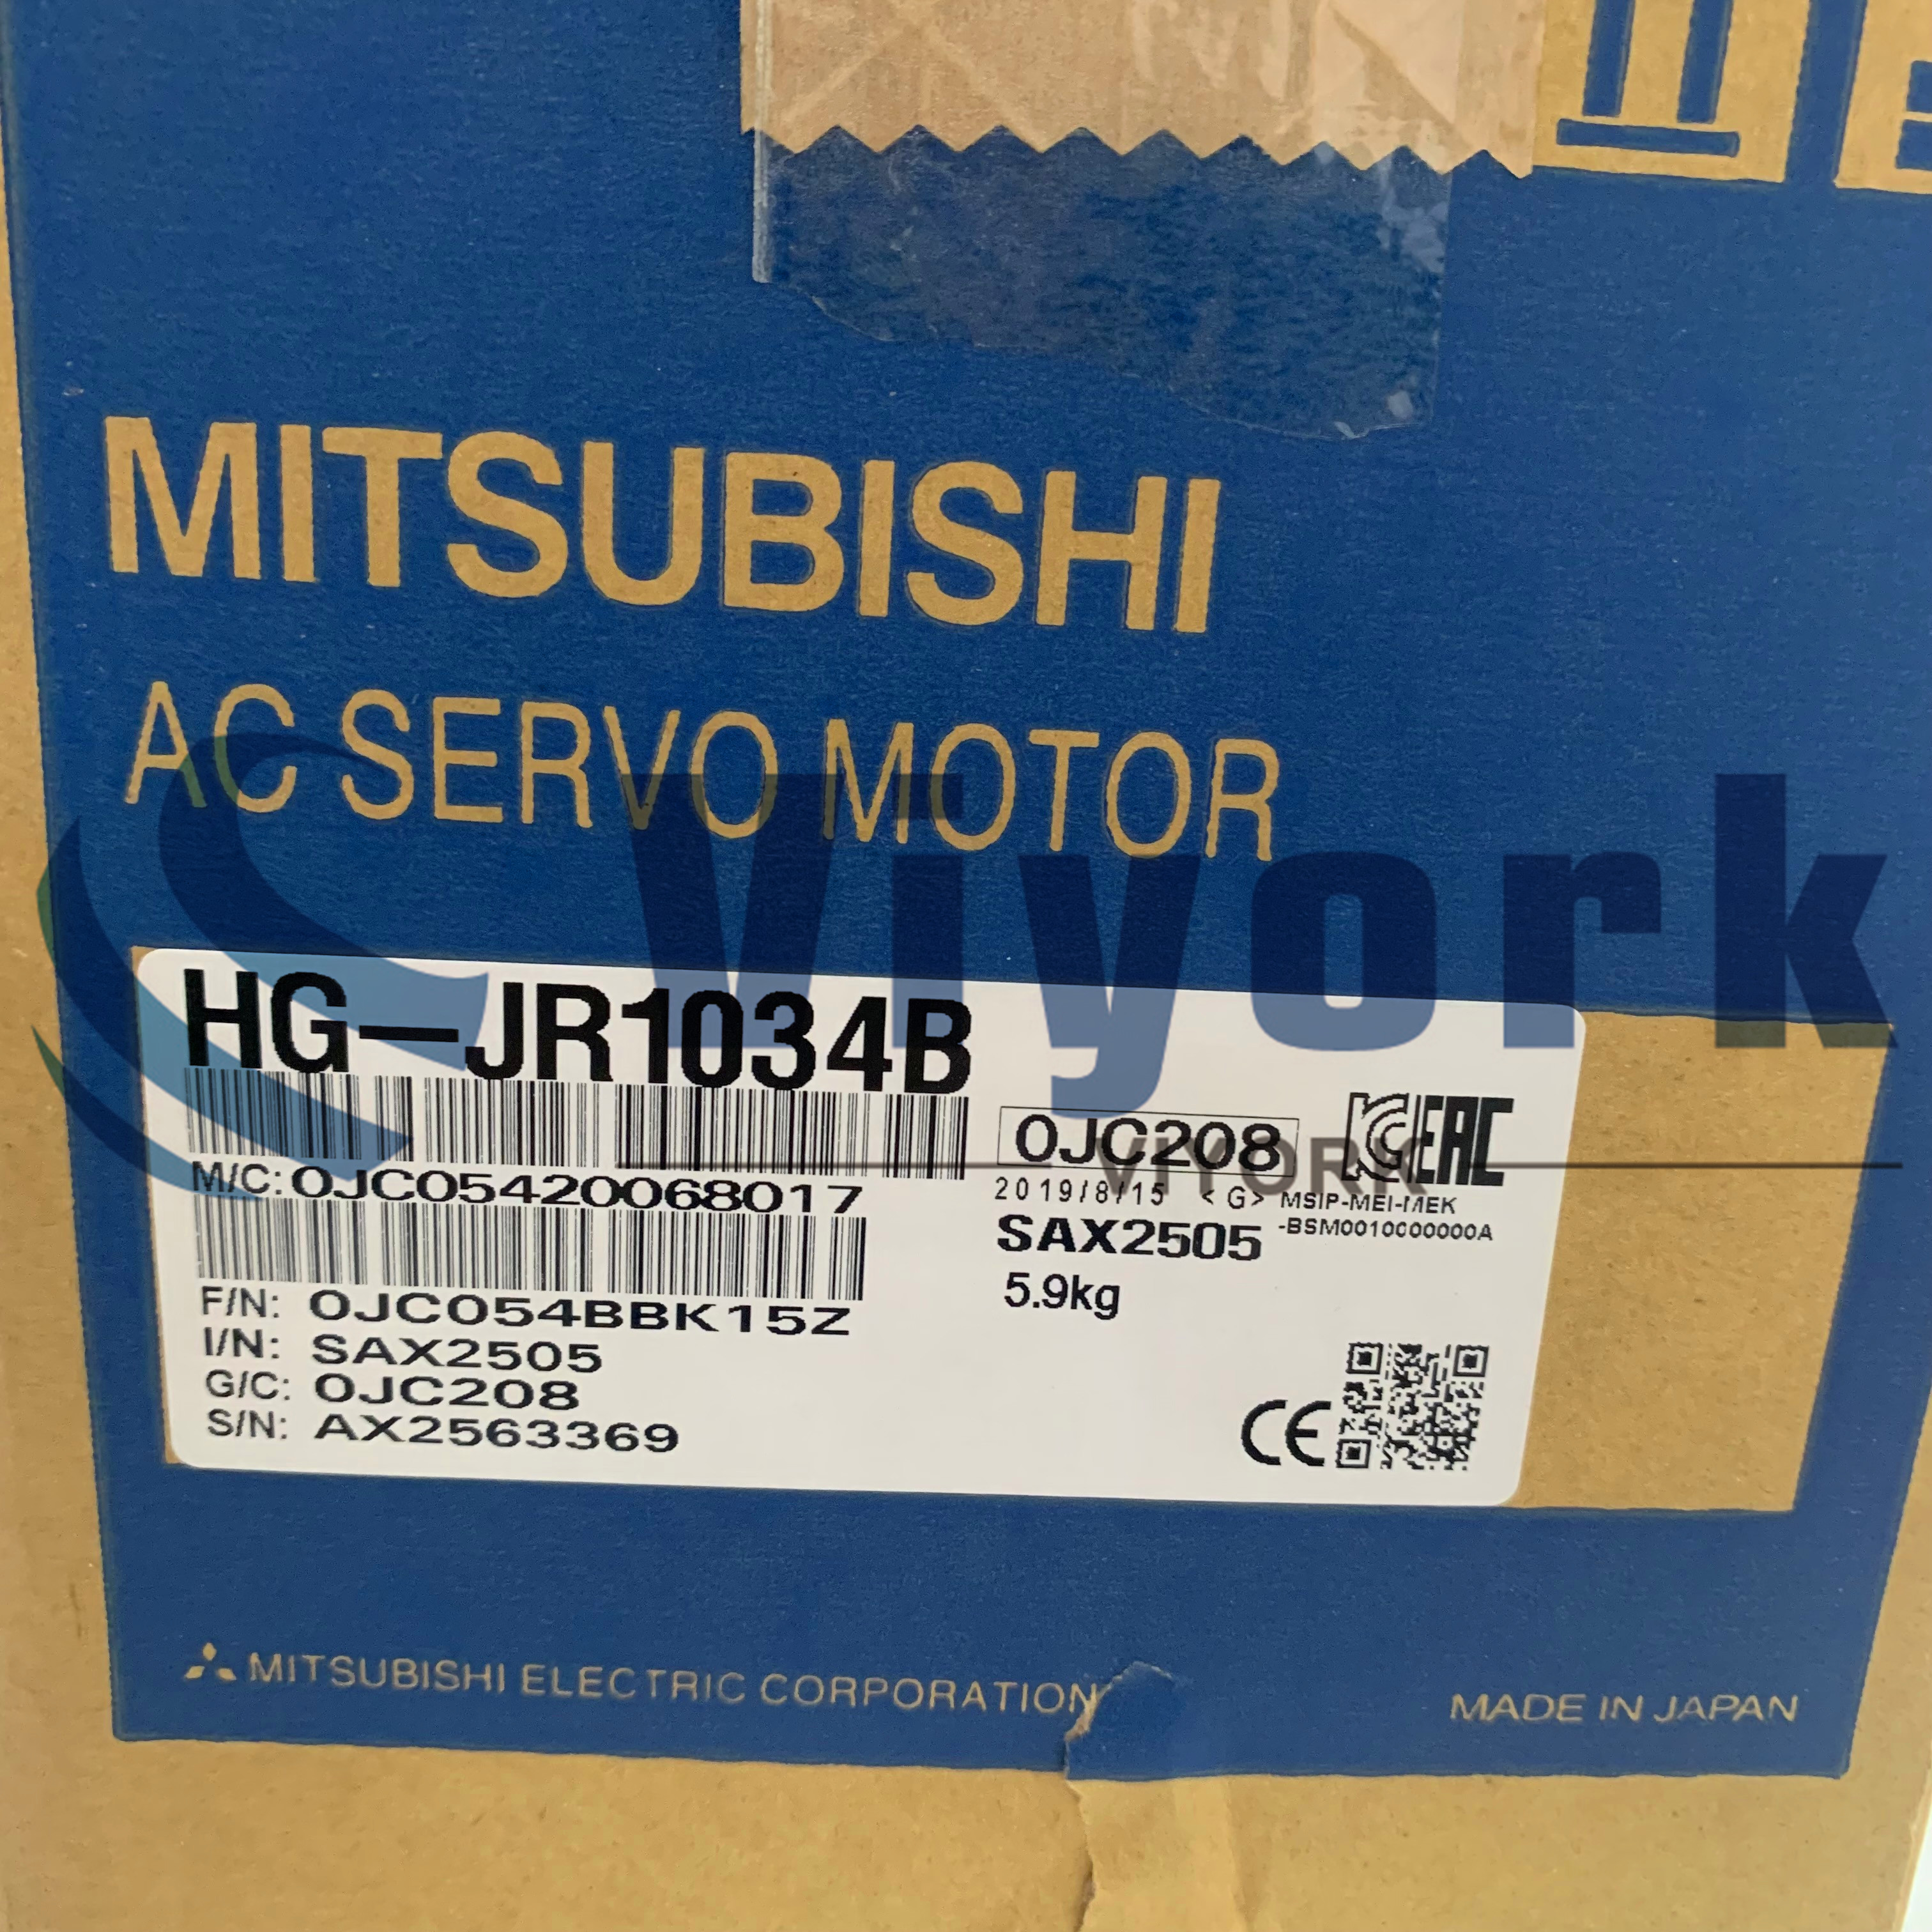 Mitsubishi HG-JR1034B AC SERVO MOTOR 400V SRVMTR 1KW BRK NEW